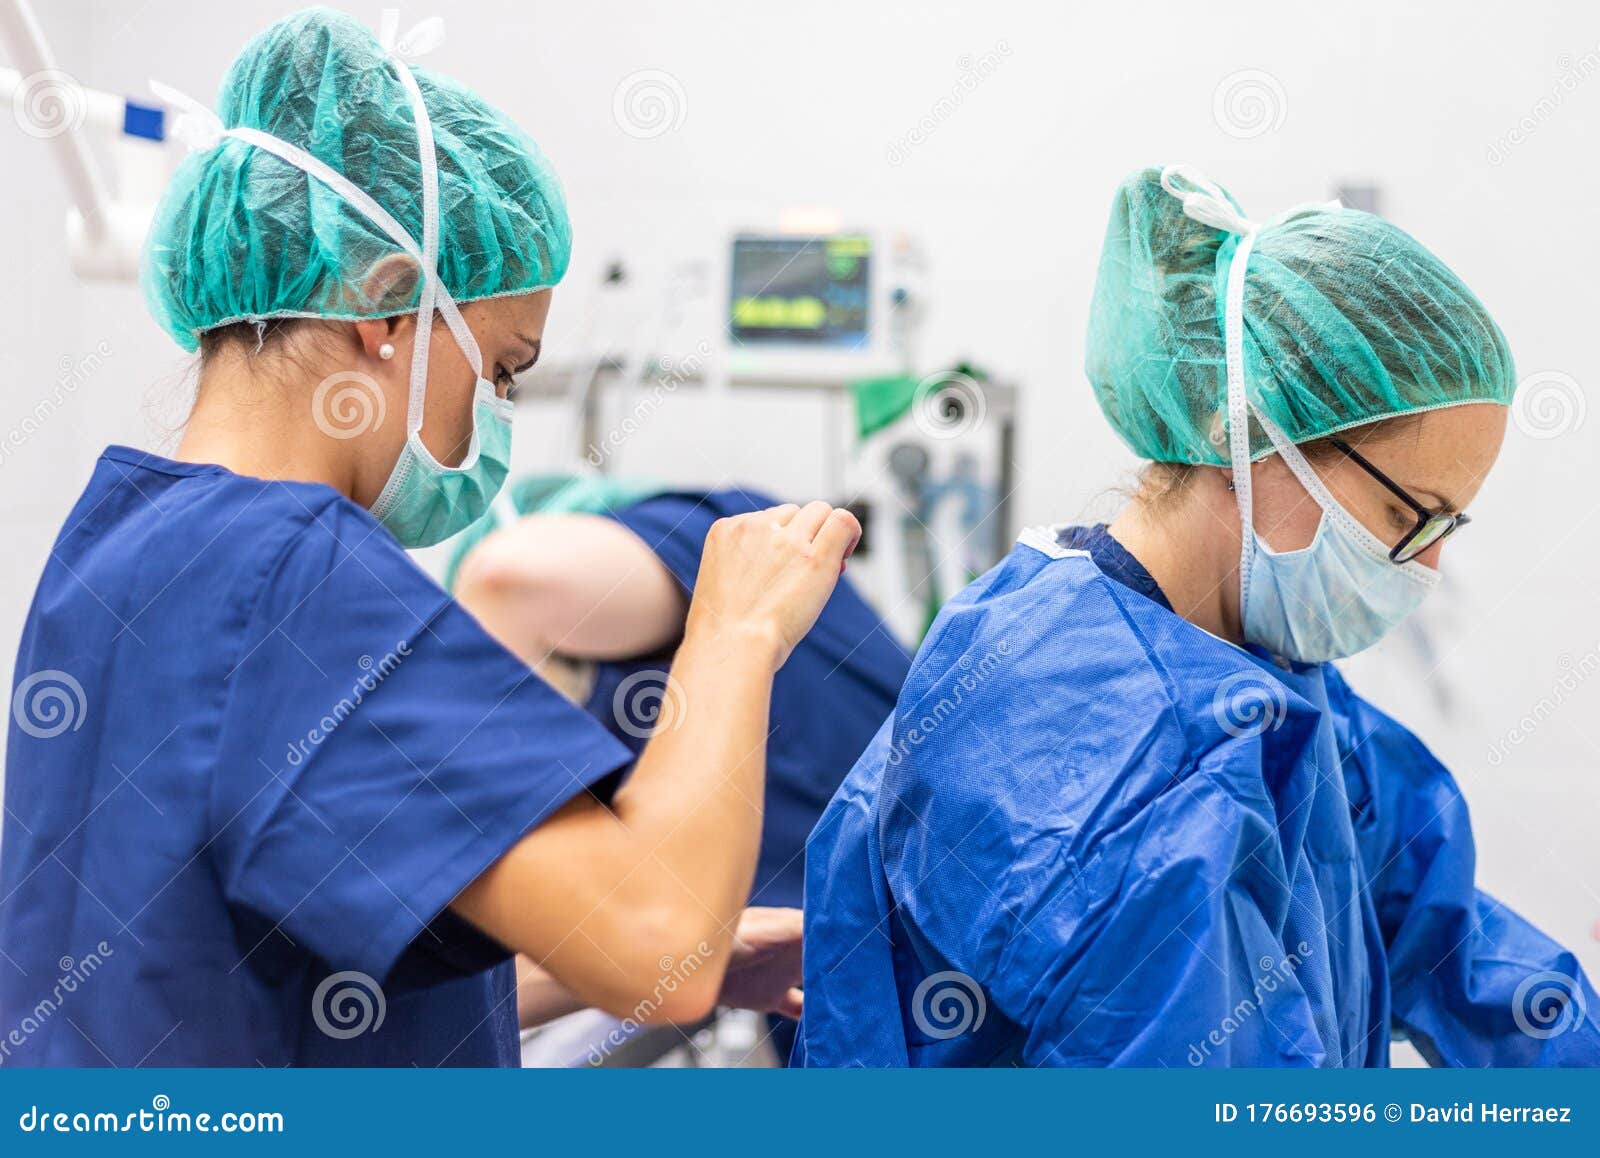 Asistente Médico Ayudando a Un Cirujano a Vestir Ropa Estéril En Un  Quirófano. Foto de archivo - Imagen de standing, estéril: 176693596